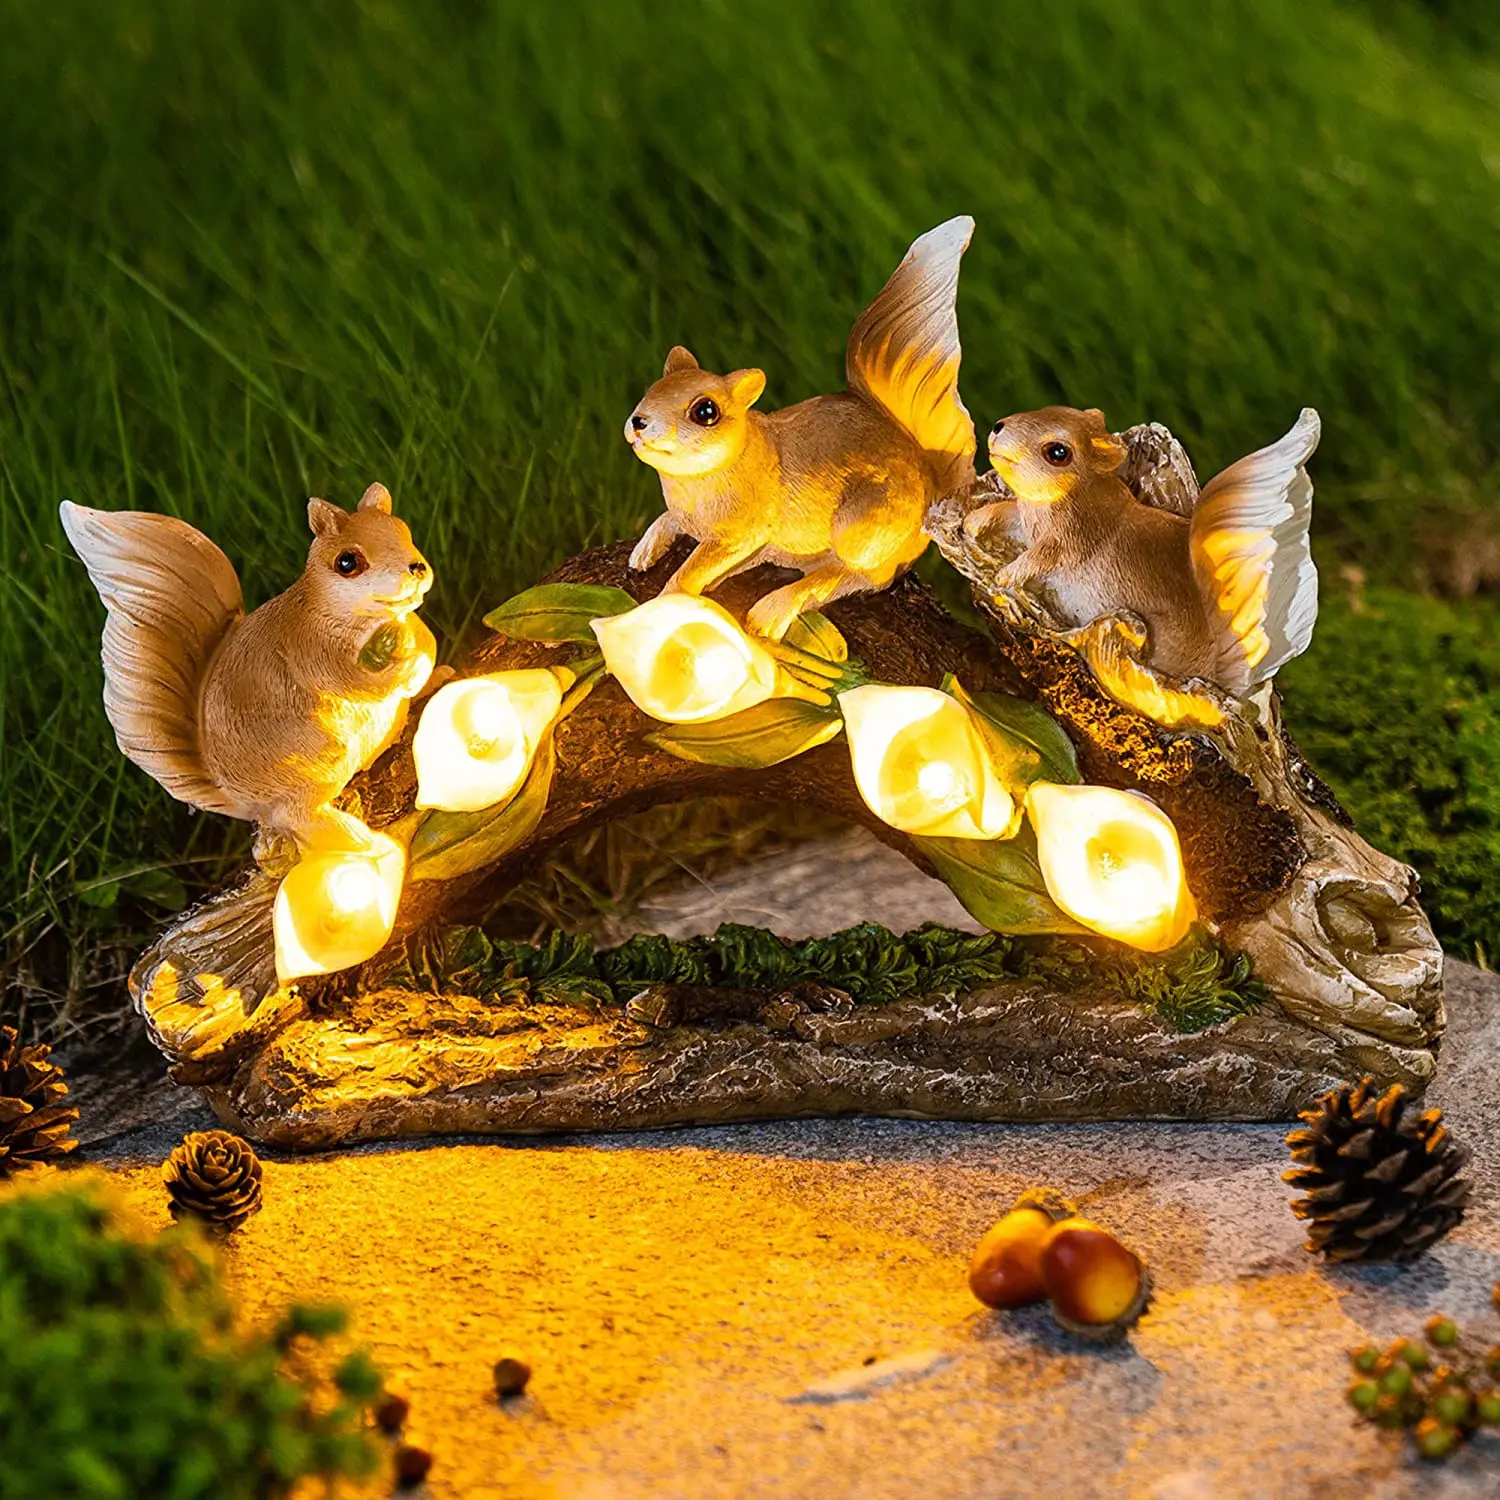 Estatuilla de Gnomo de resina divertida y grande con luces LED solares farolillos decorativos para exteriores, adornos de jardín